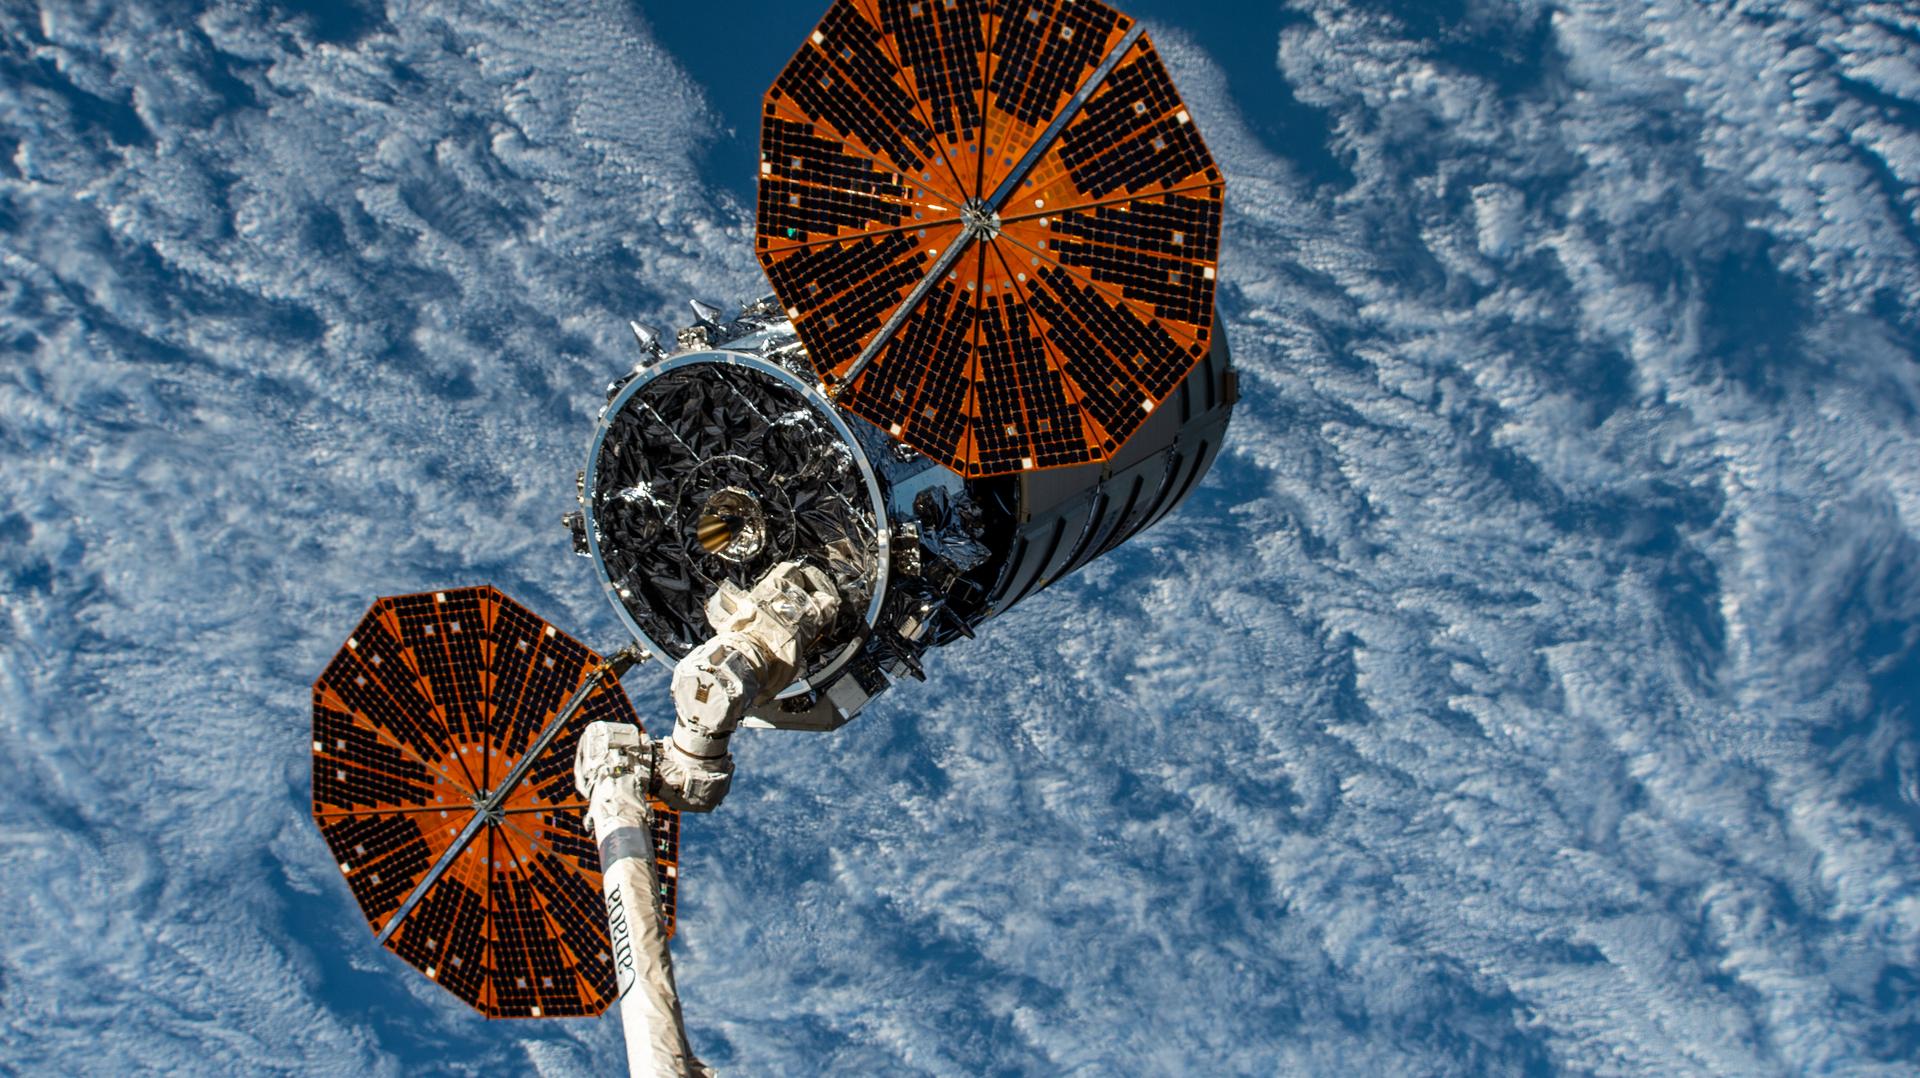 Un Cygnus à tout faire ! Le cargo NG-17 est reparti de la station spatiale hier